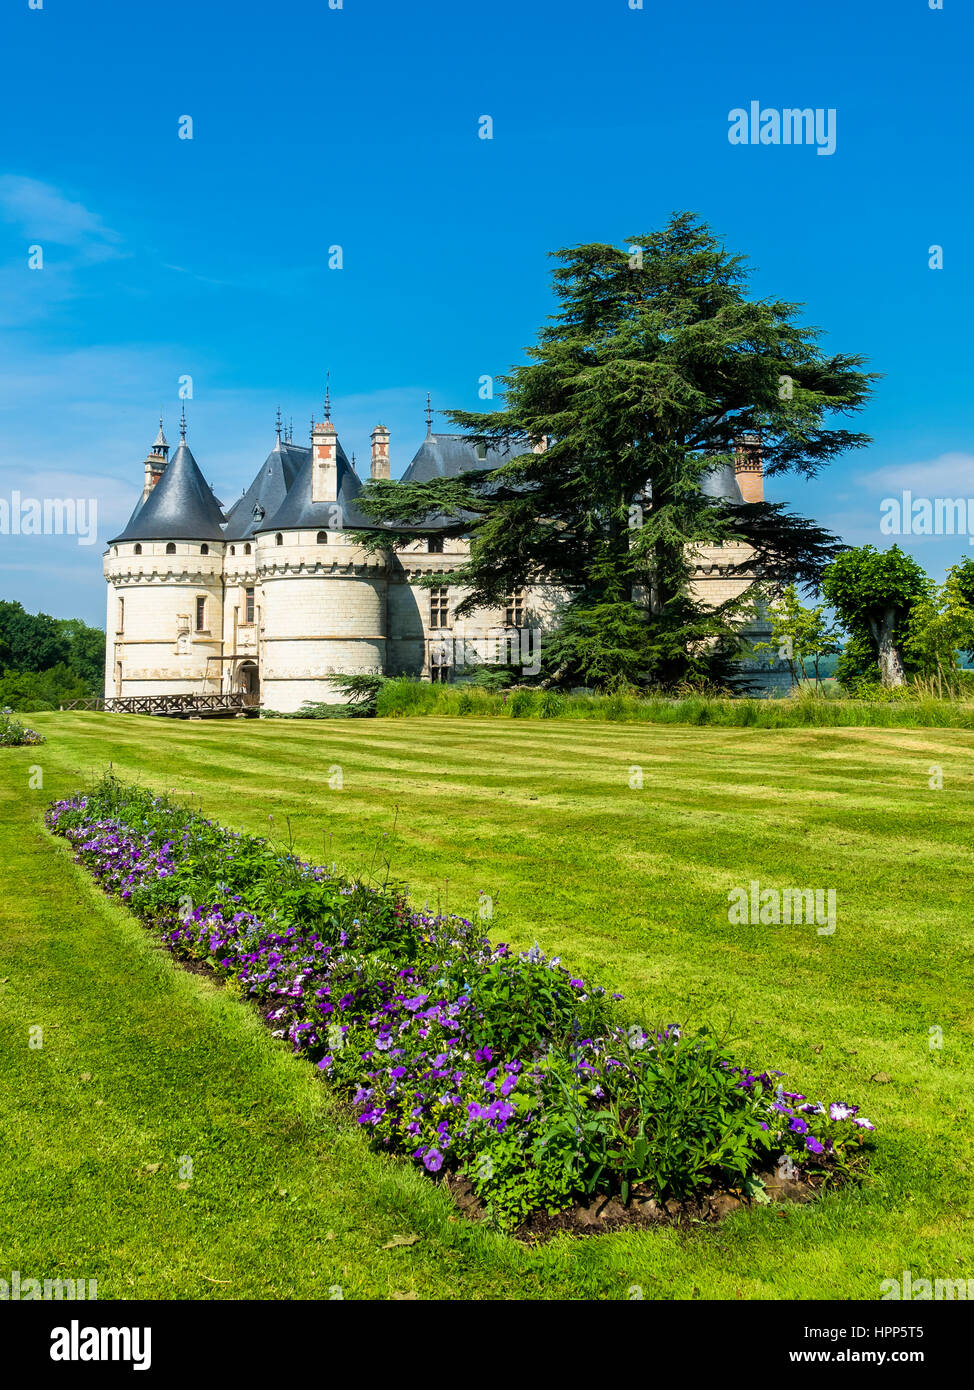 Chaumont castle, Chateau de Chaumont, with parkland, Chaumont-sur-Loire, Department Loir-et-Cher, France Stock Photo